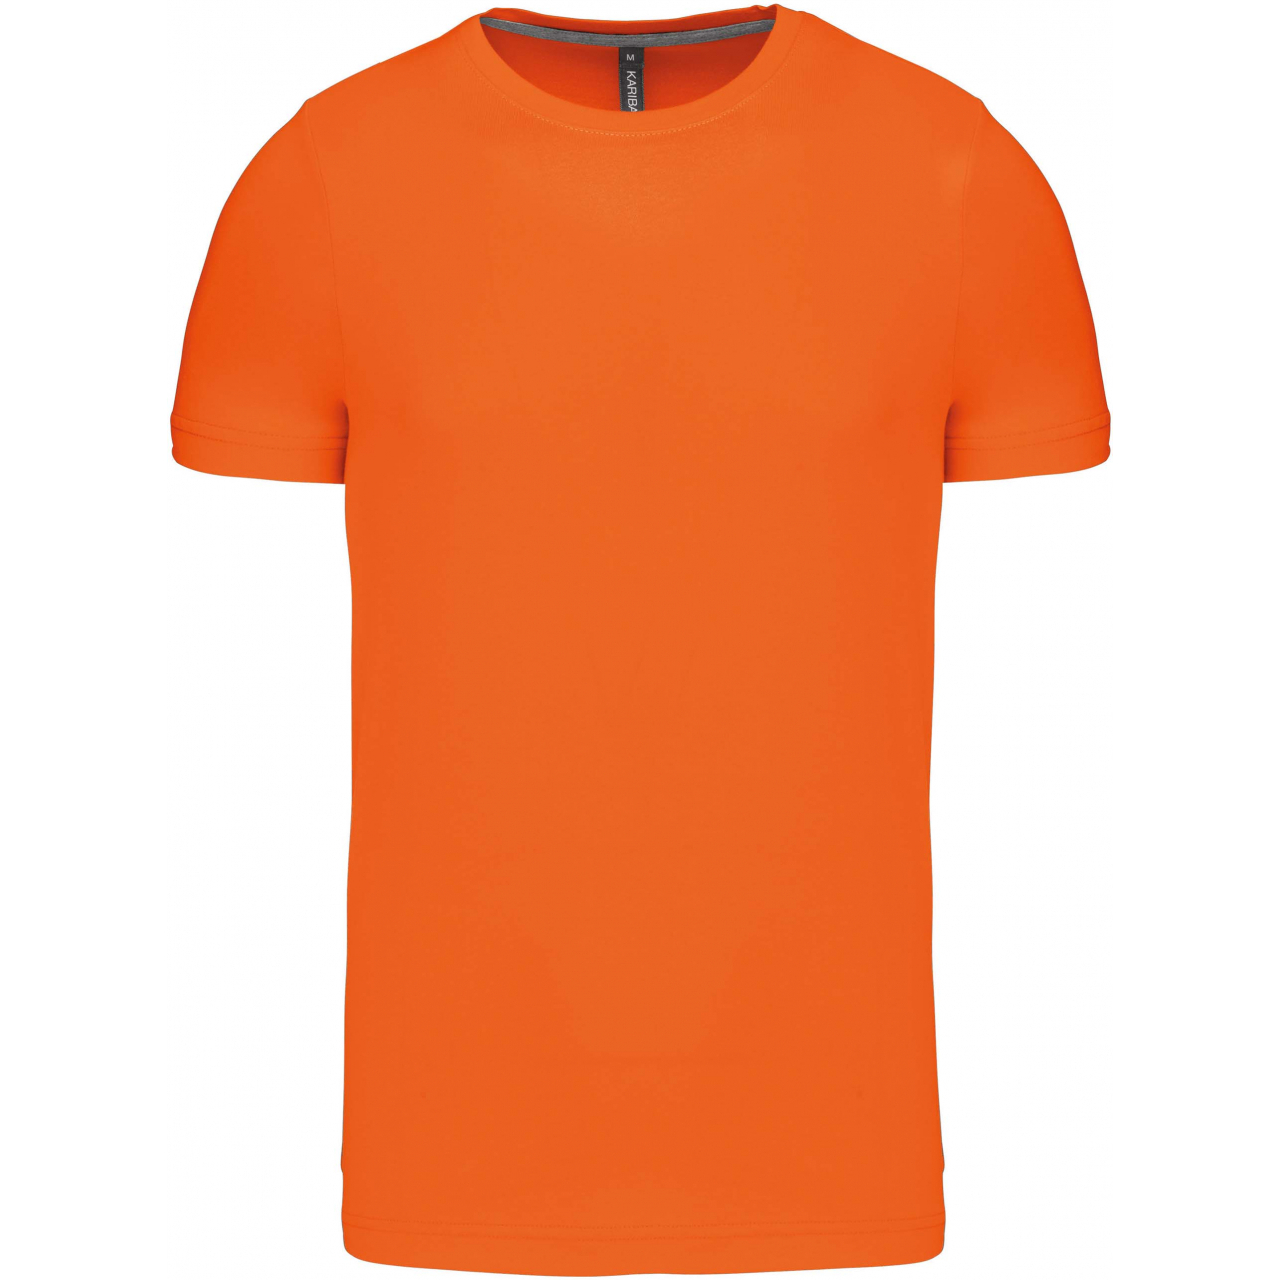 Pánské tričko Kariban krátký rukáv - oranžové, XL